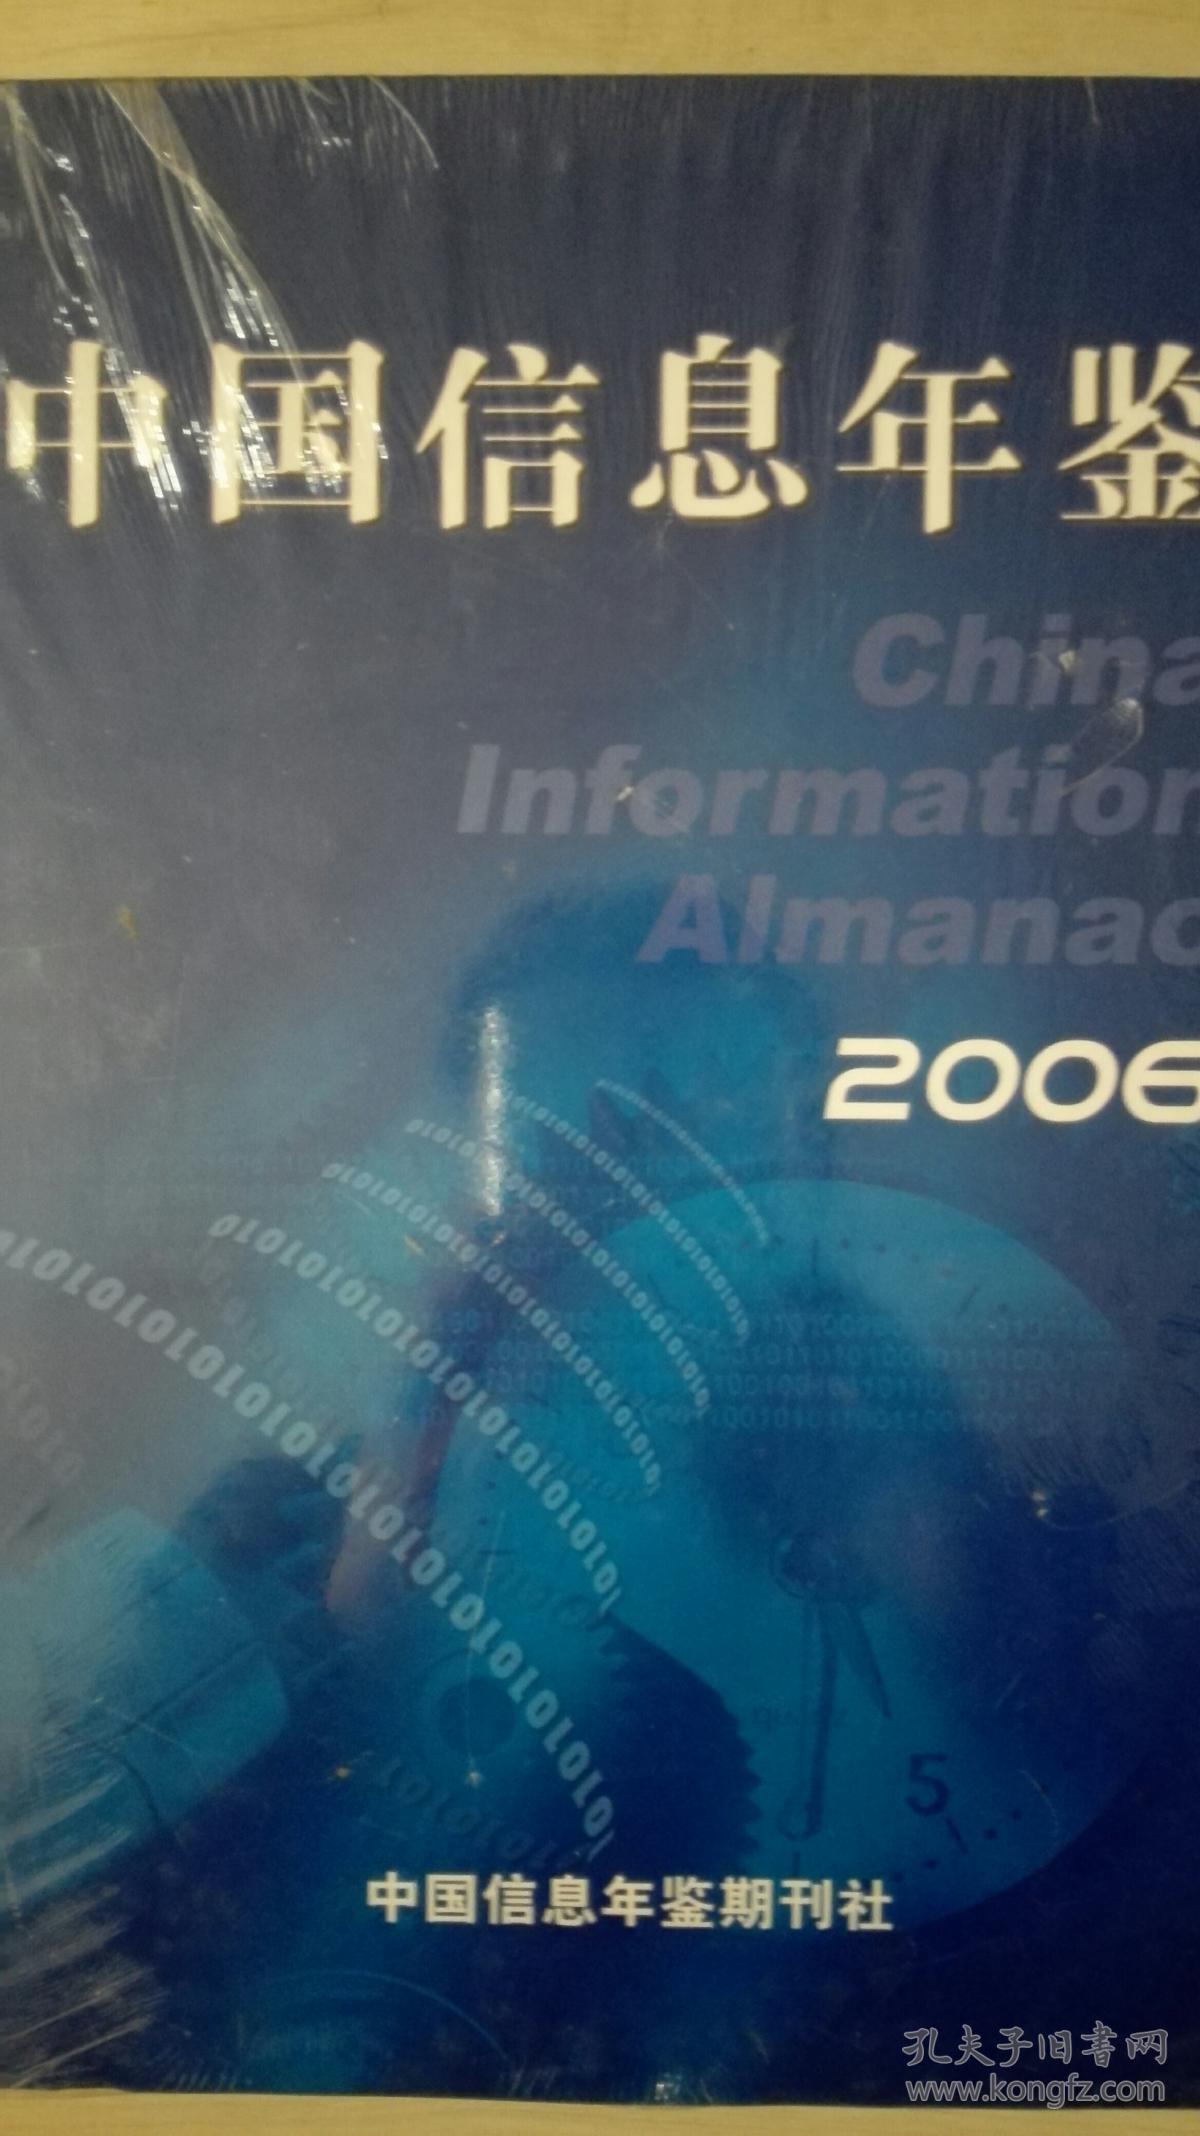 中国信息年鉴2006现货处理